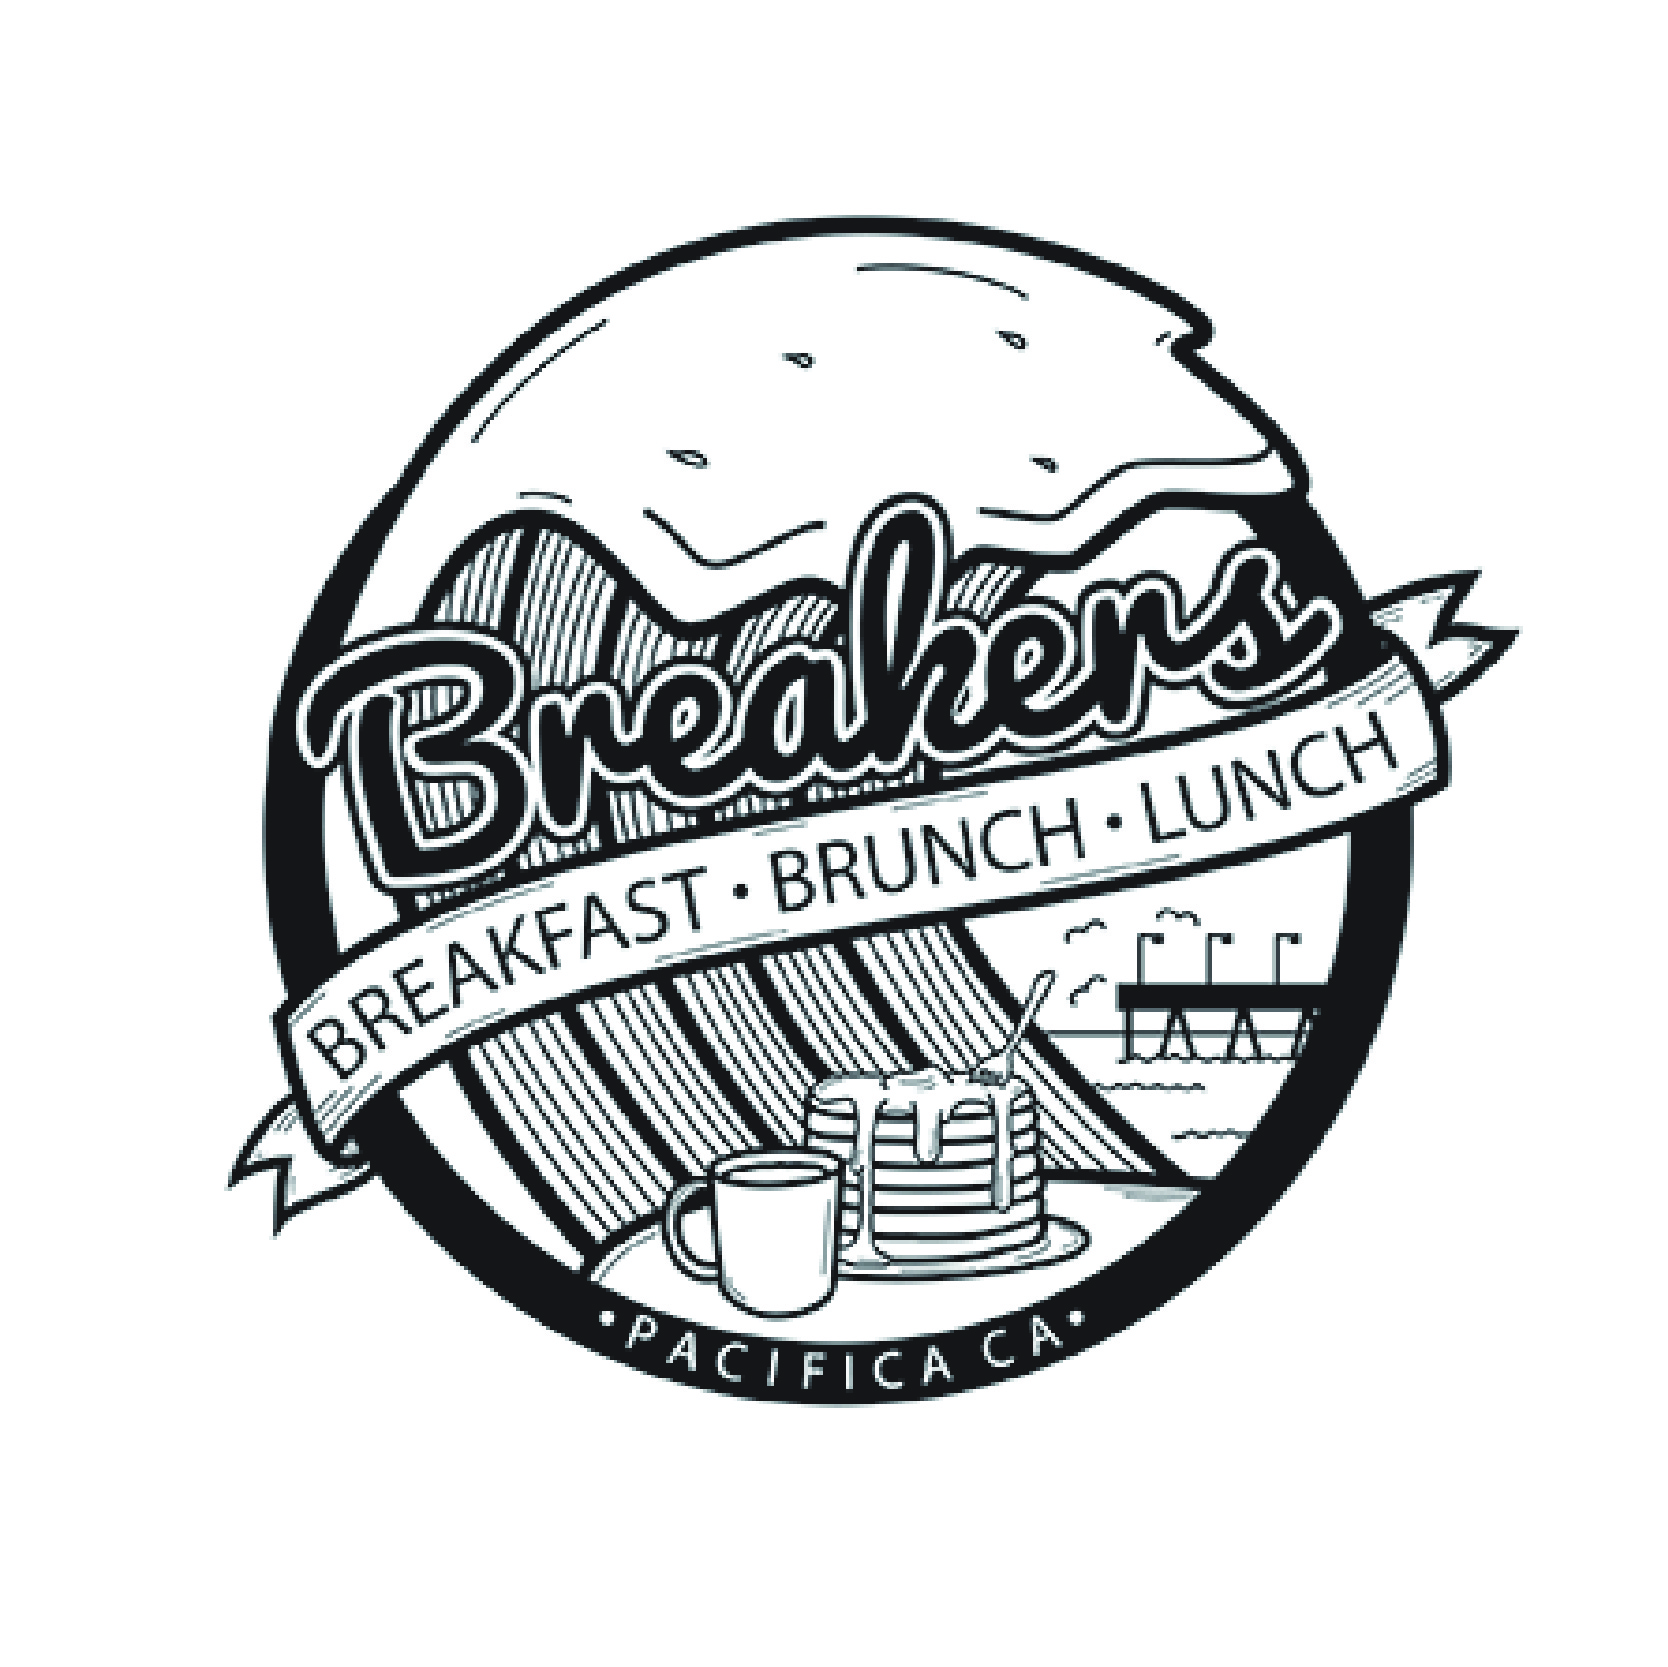 Breakers Breakfast, Brunch & Lunch